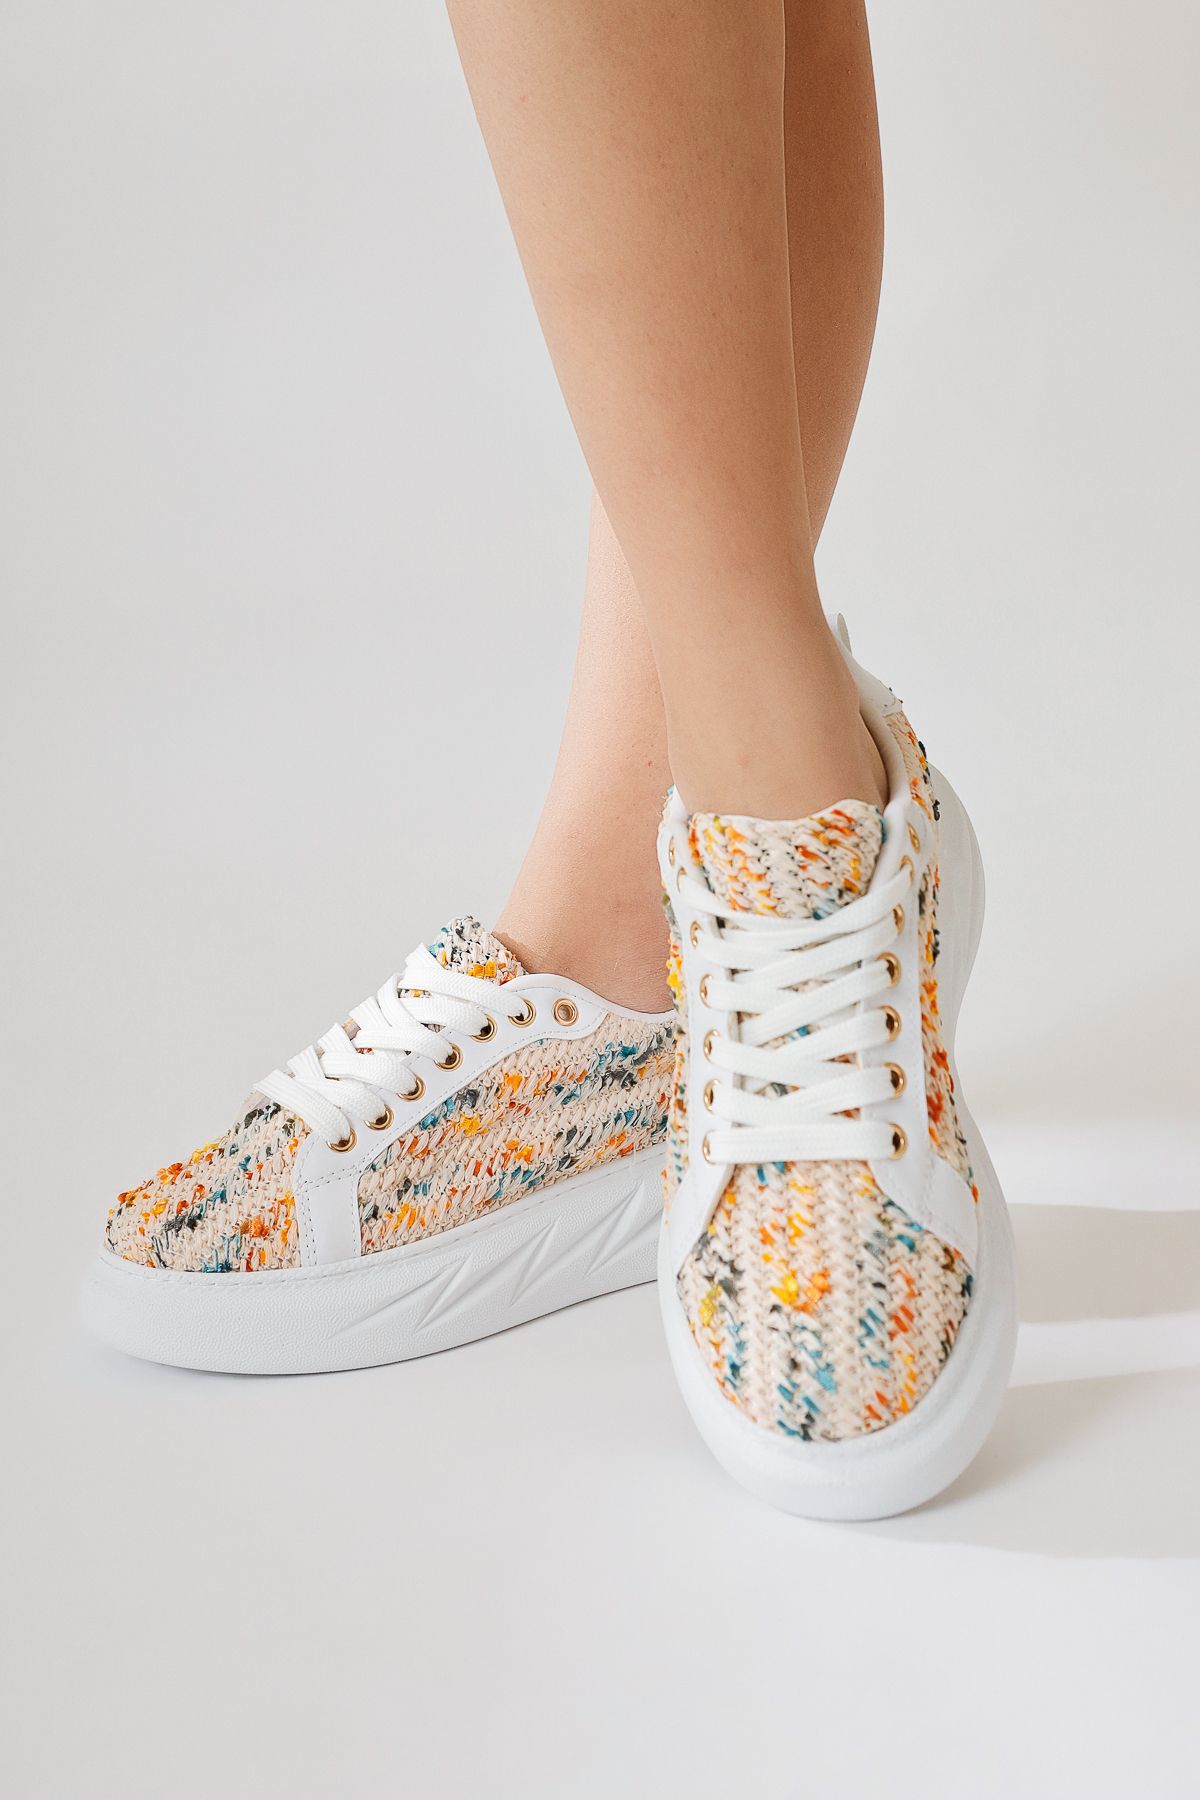 Limoya Silfa Beyaz Örgü Desenli Yüksek Taban Bağcıklı Sneakers